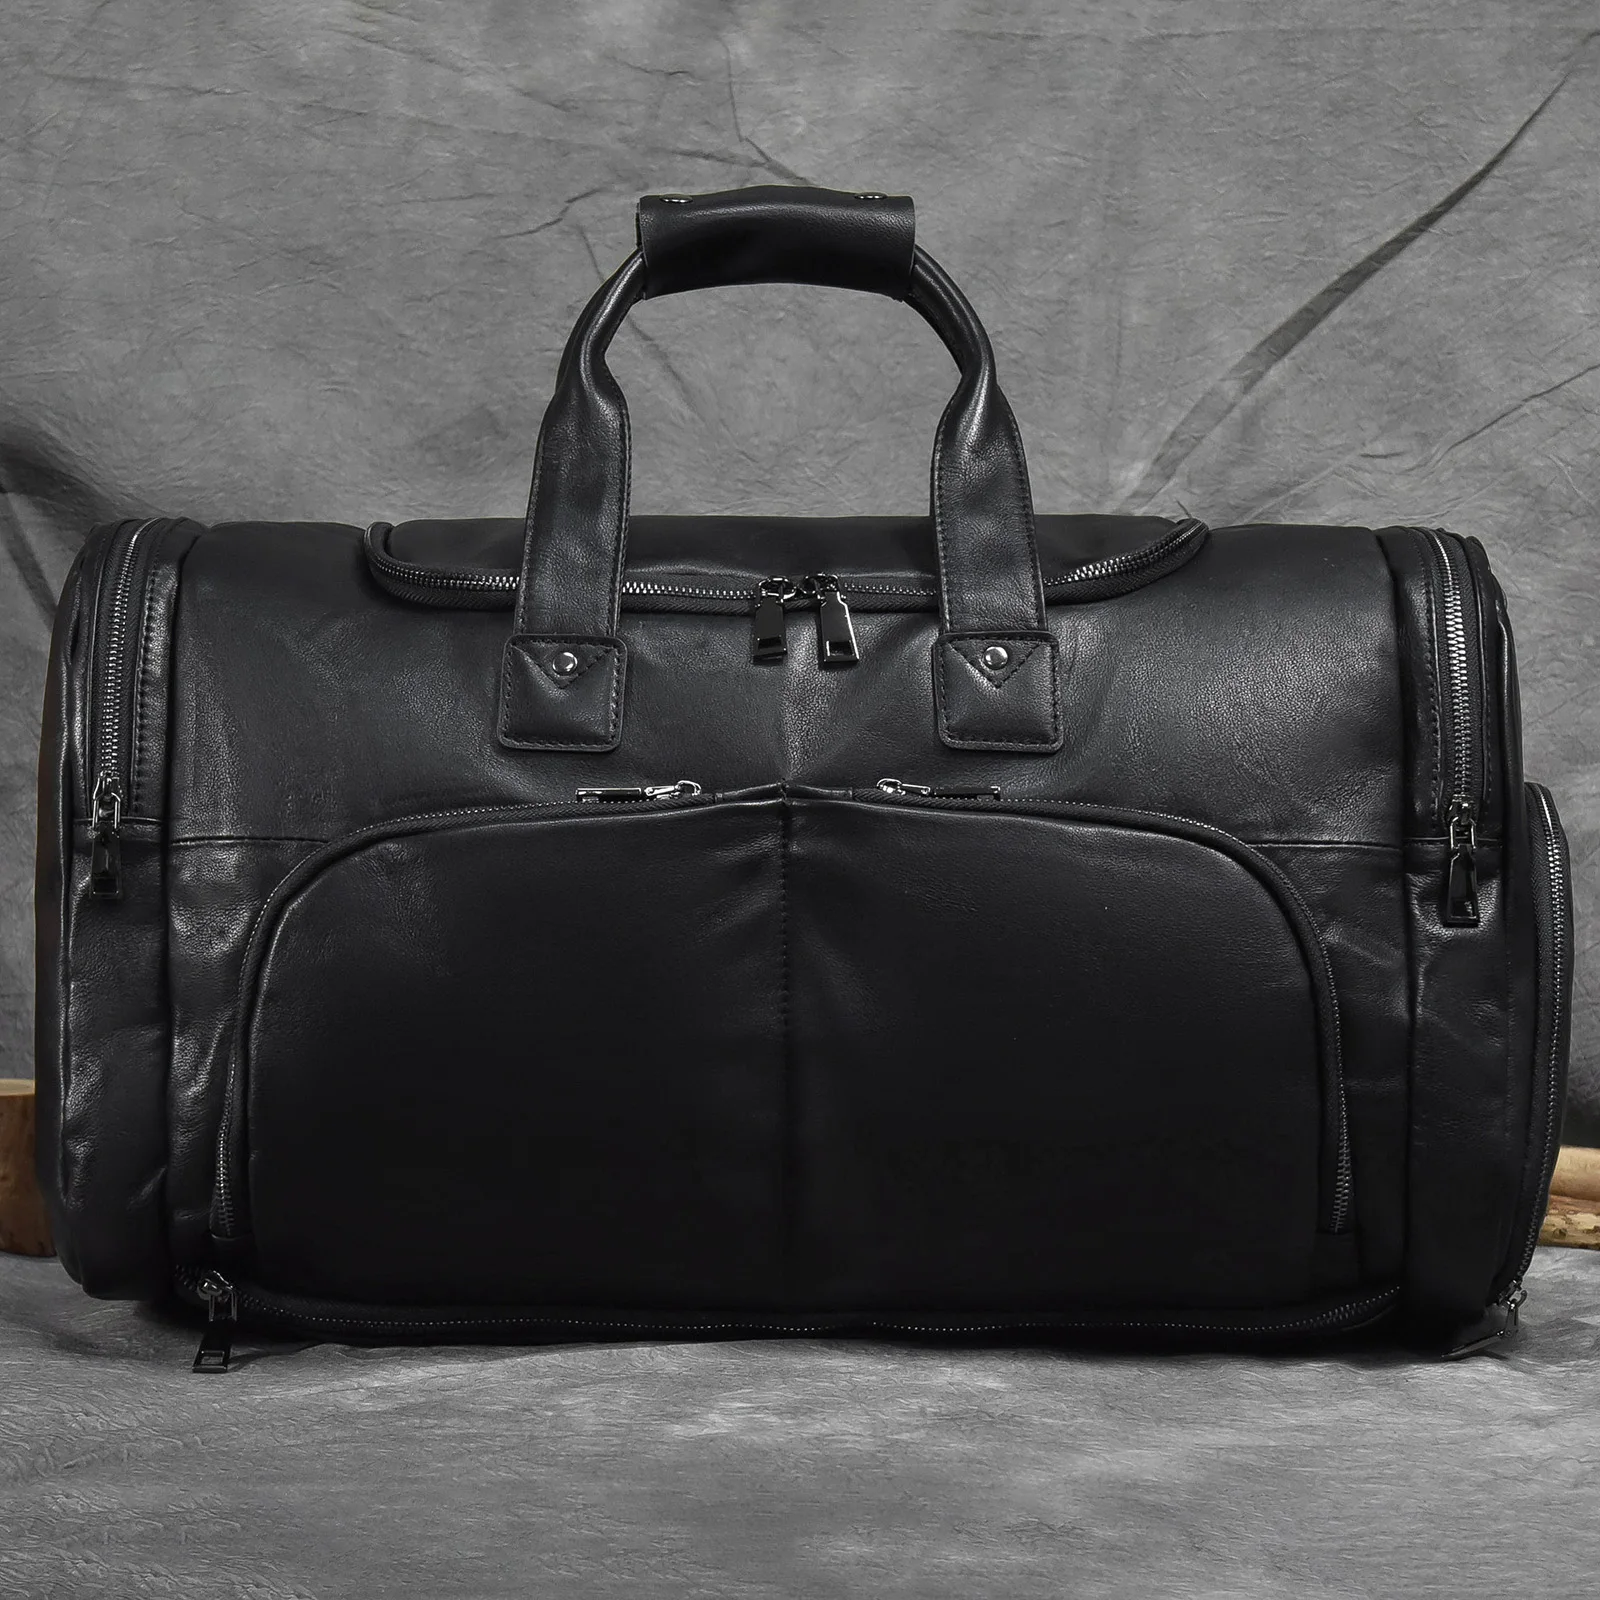 Leather Travel Bags For Business Trip Handbag Black Luggage Bag With Shoes Pockets Men Nappa Cowhide Shoulder Messenger Bag